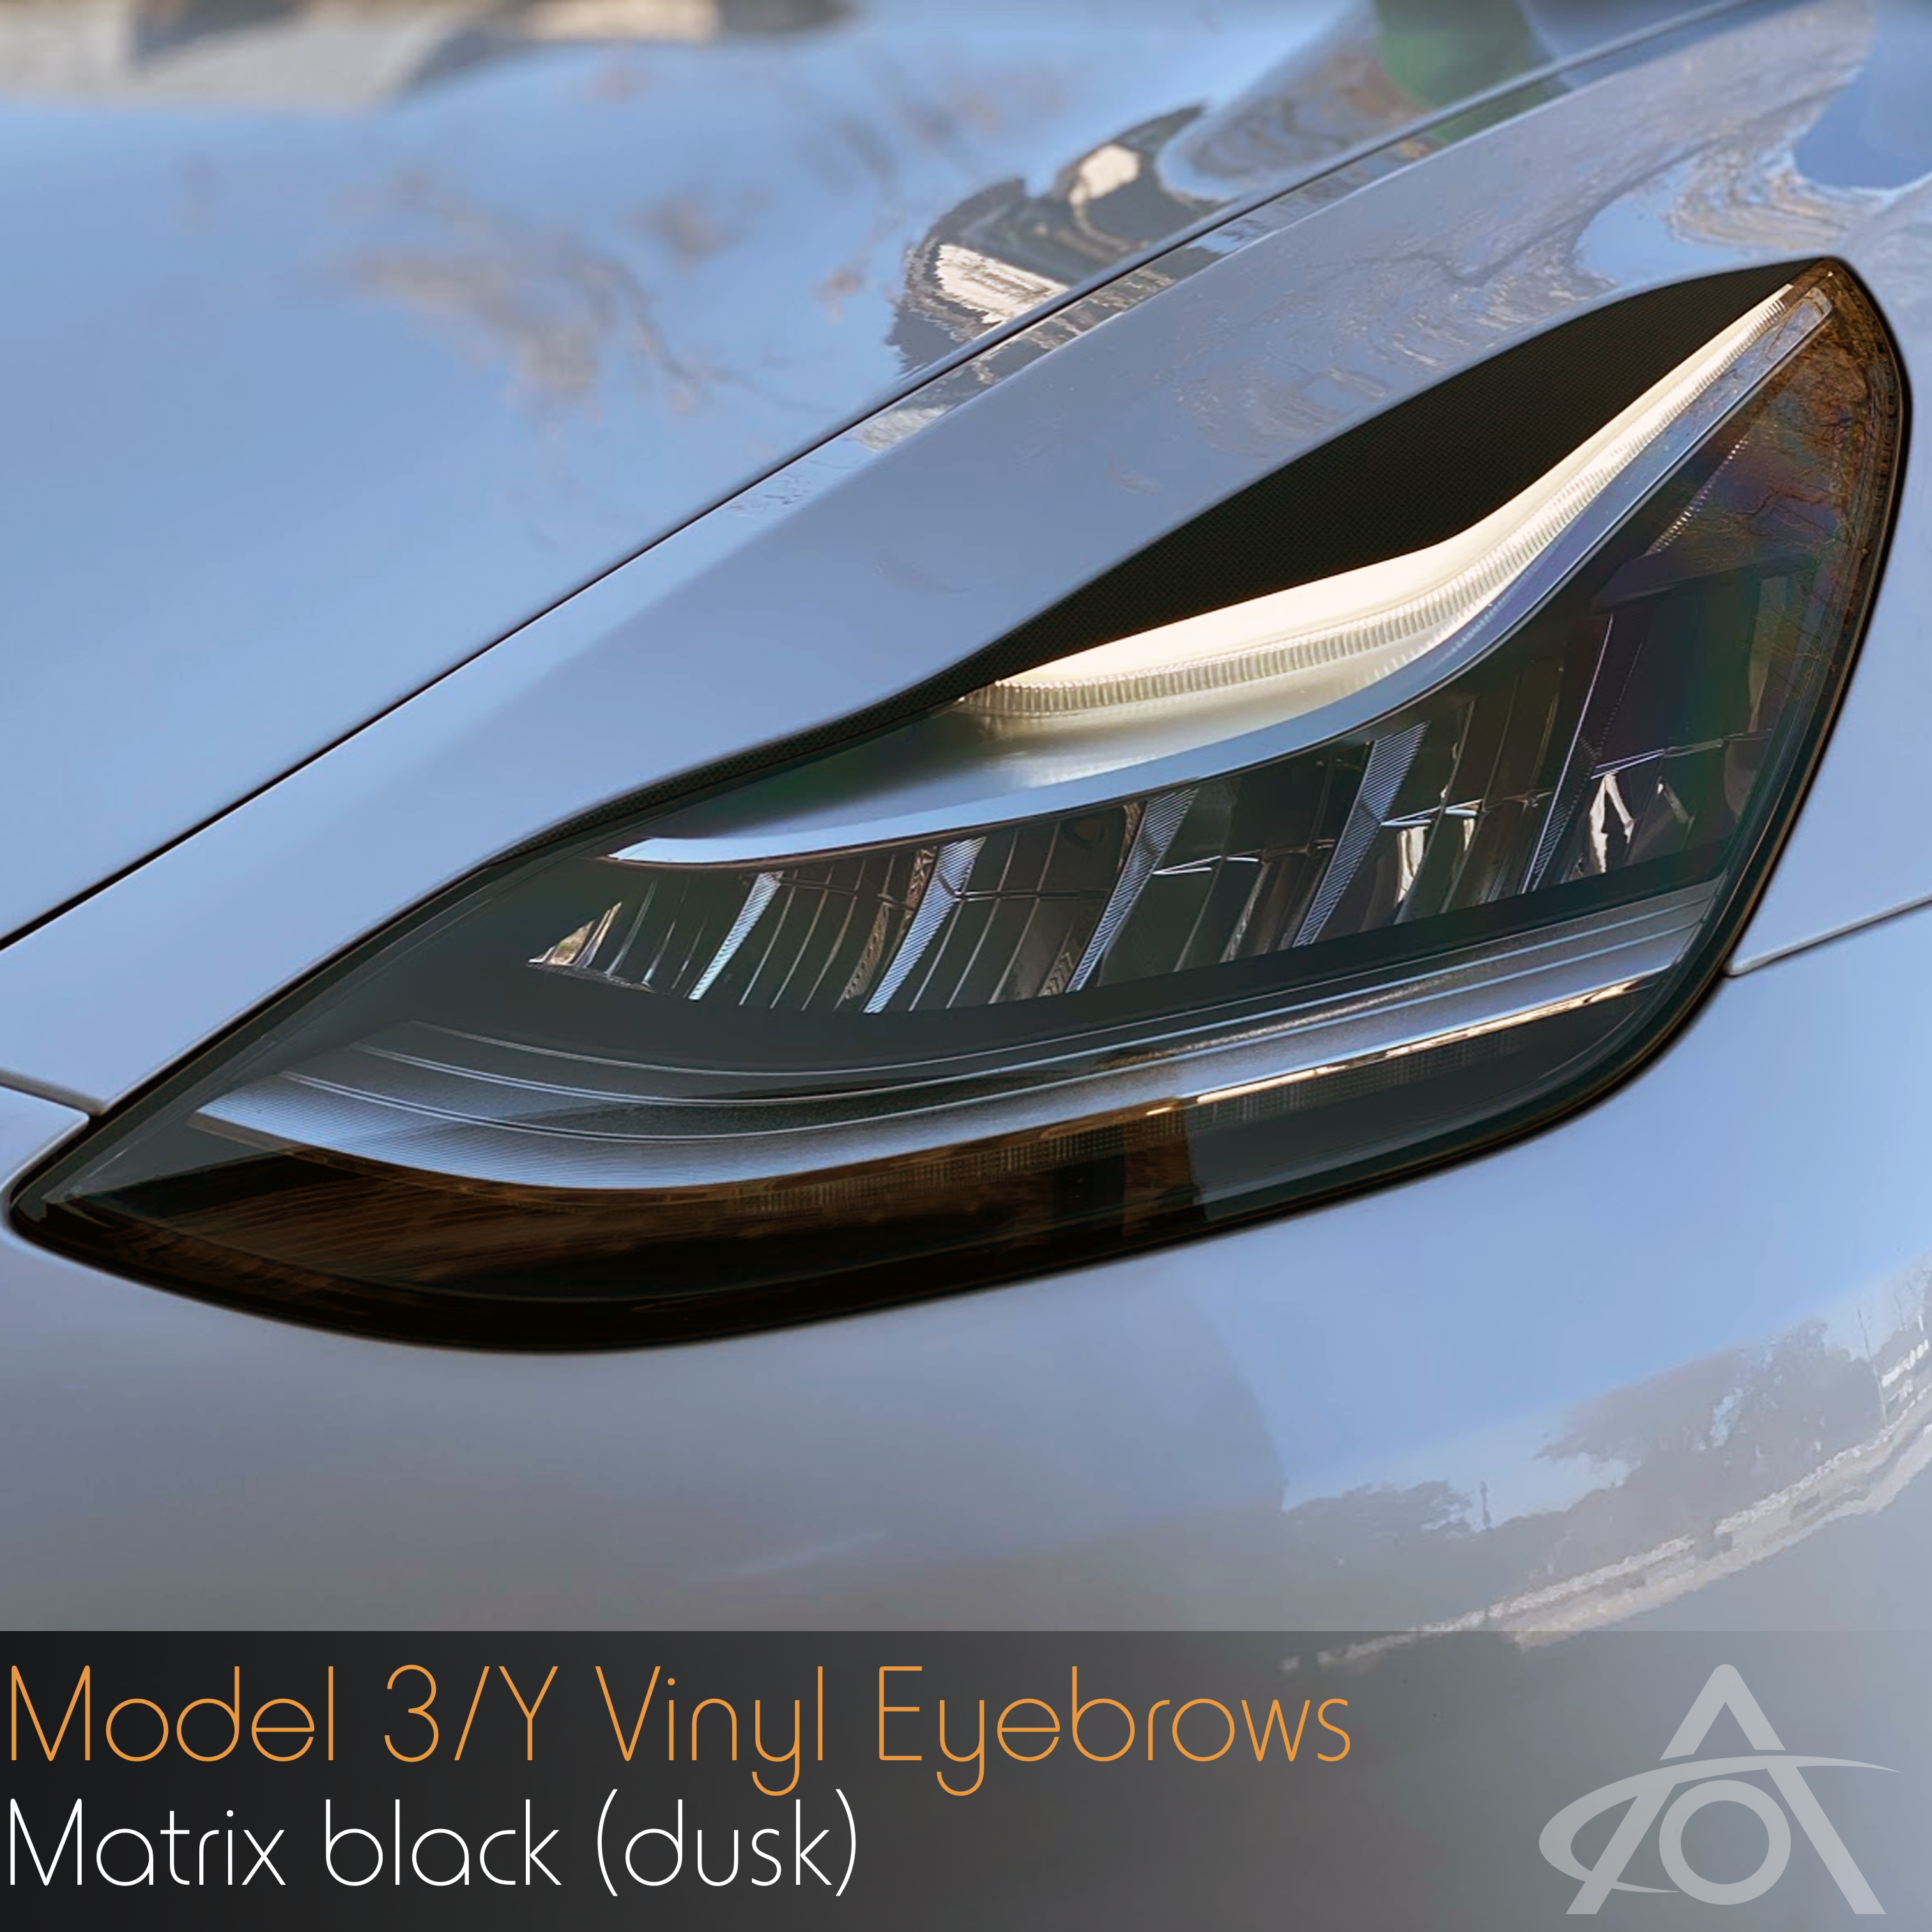 Model 3/Y Eyebrows (headlight decals)